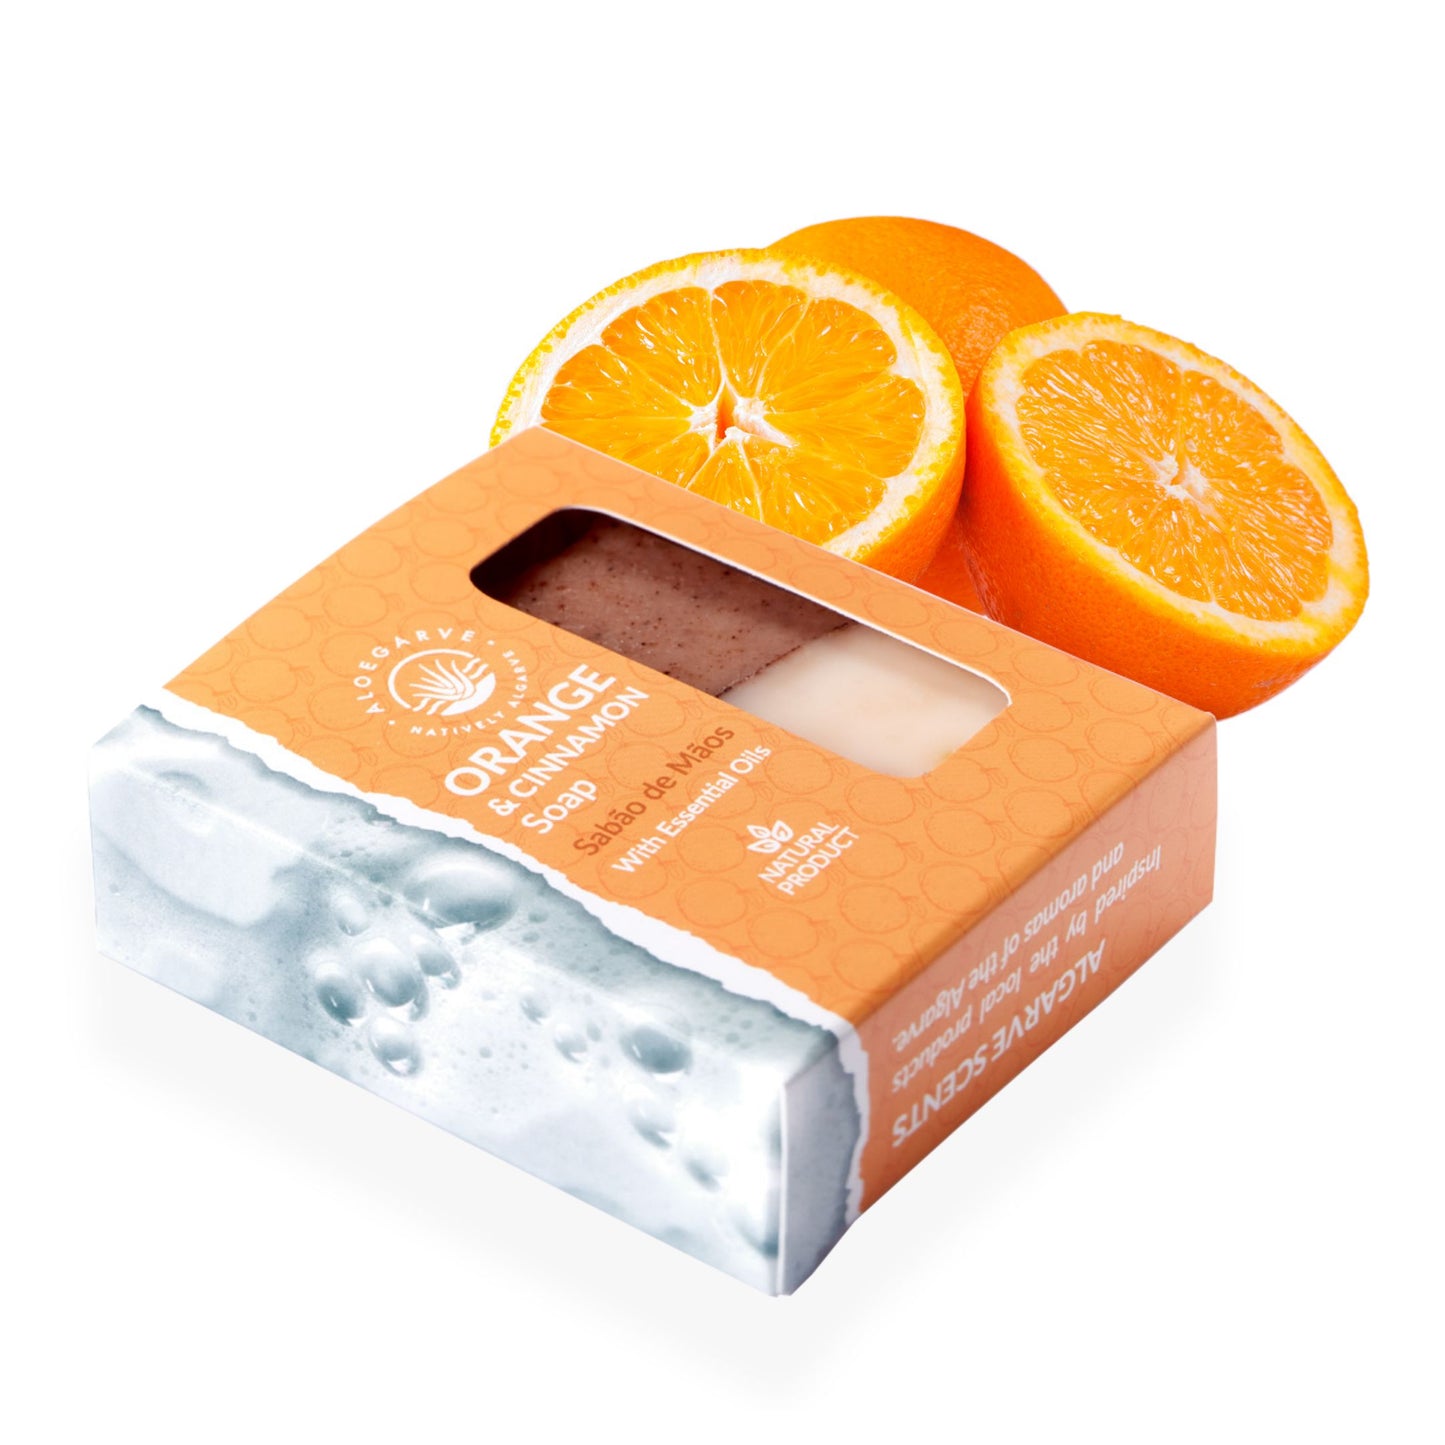 Algarve Scents Orange & Cinnamon Soap Bar 100g